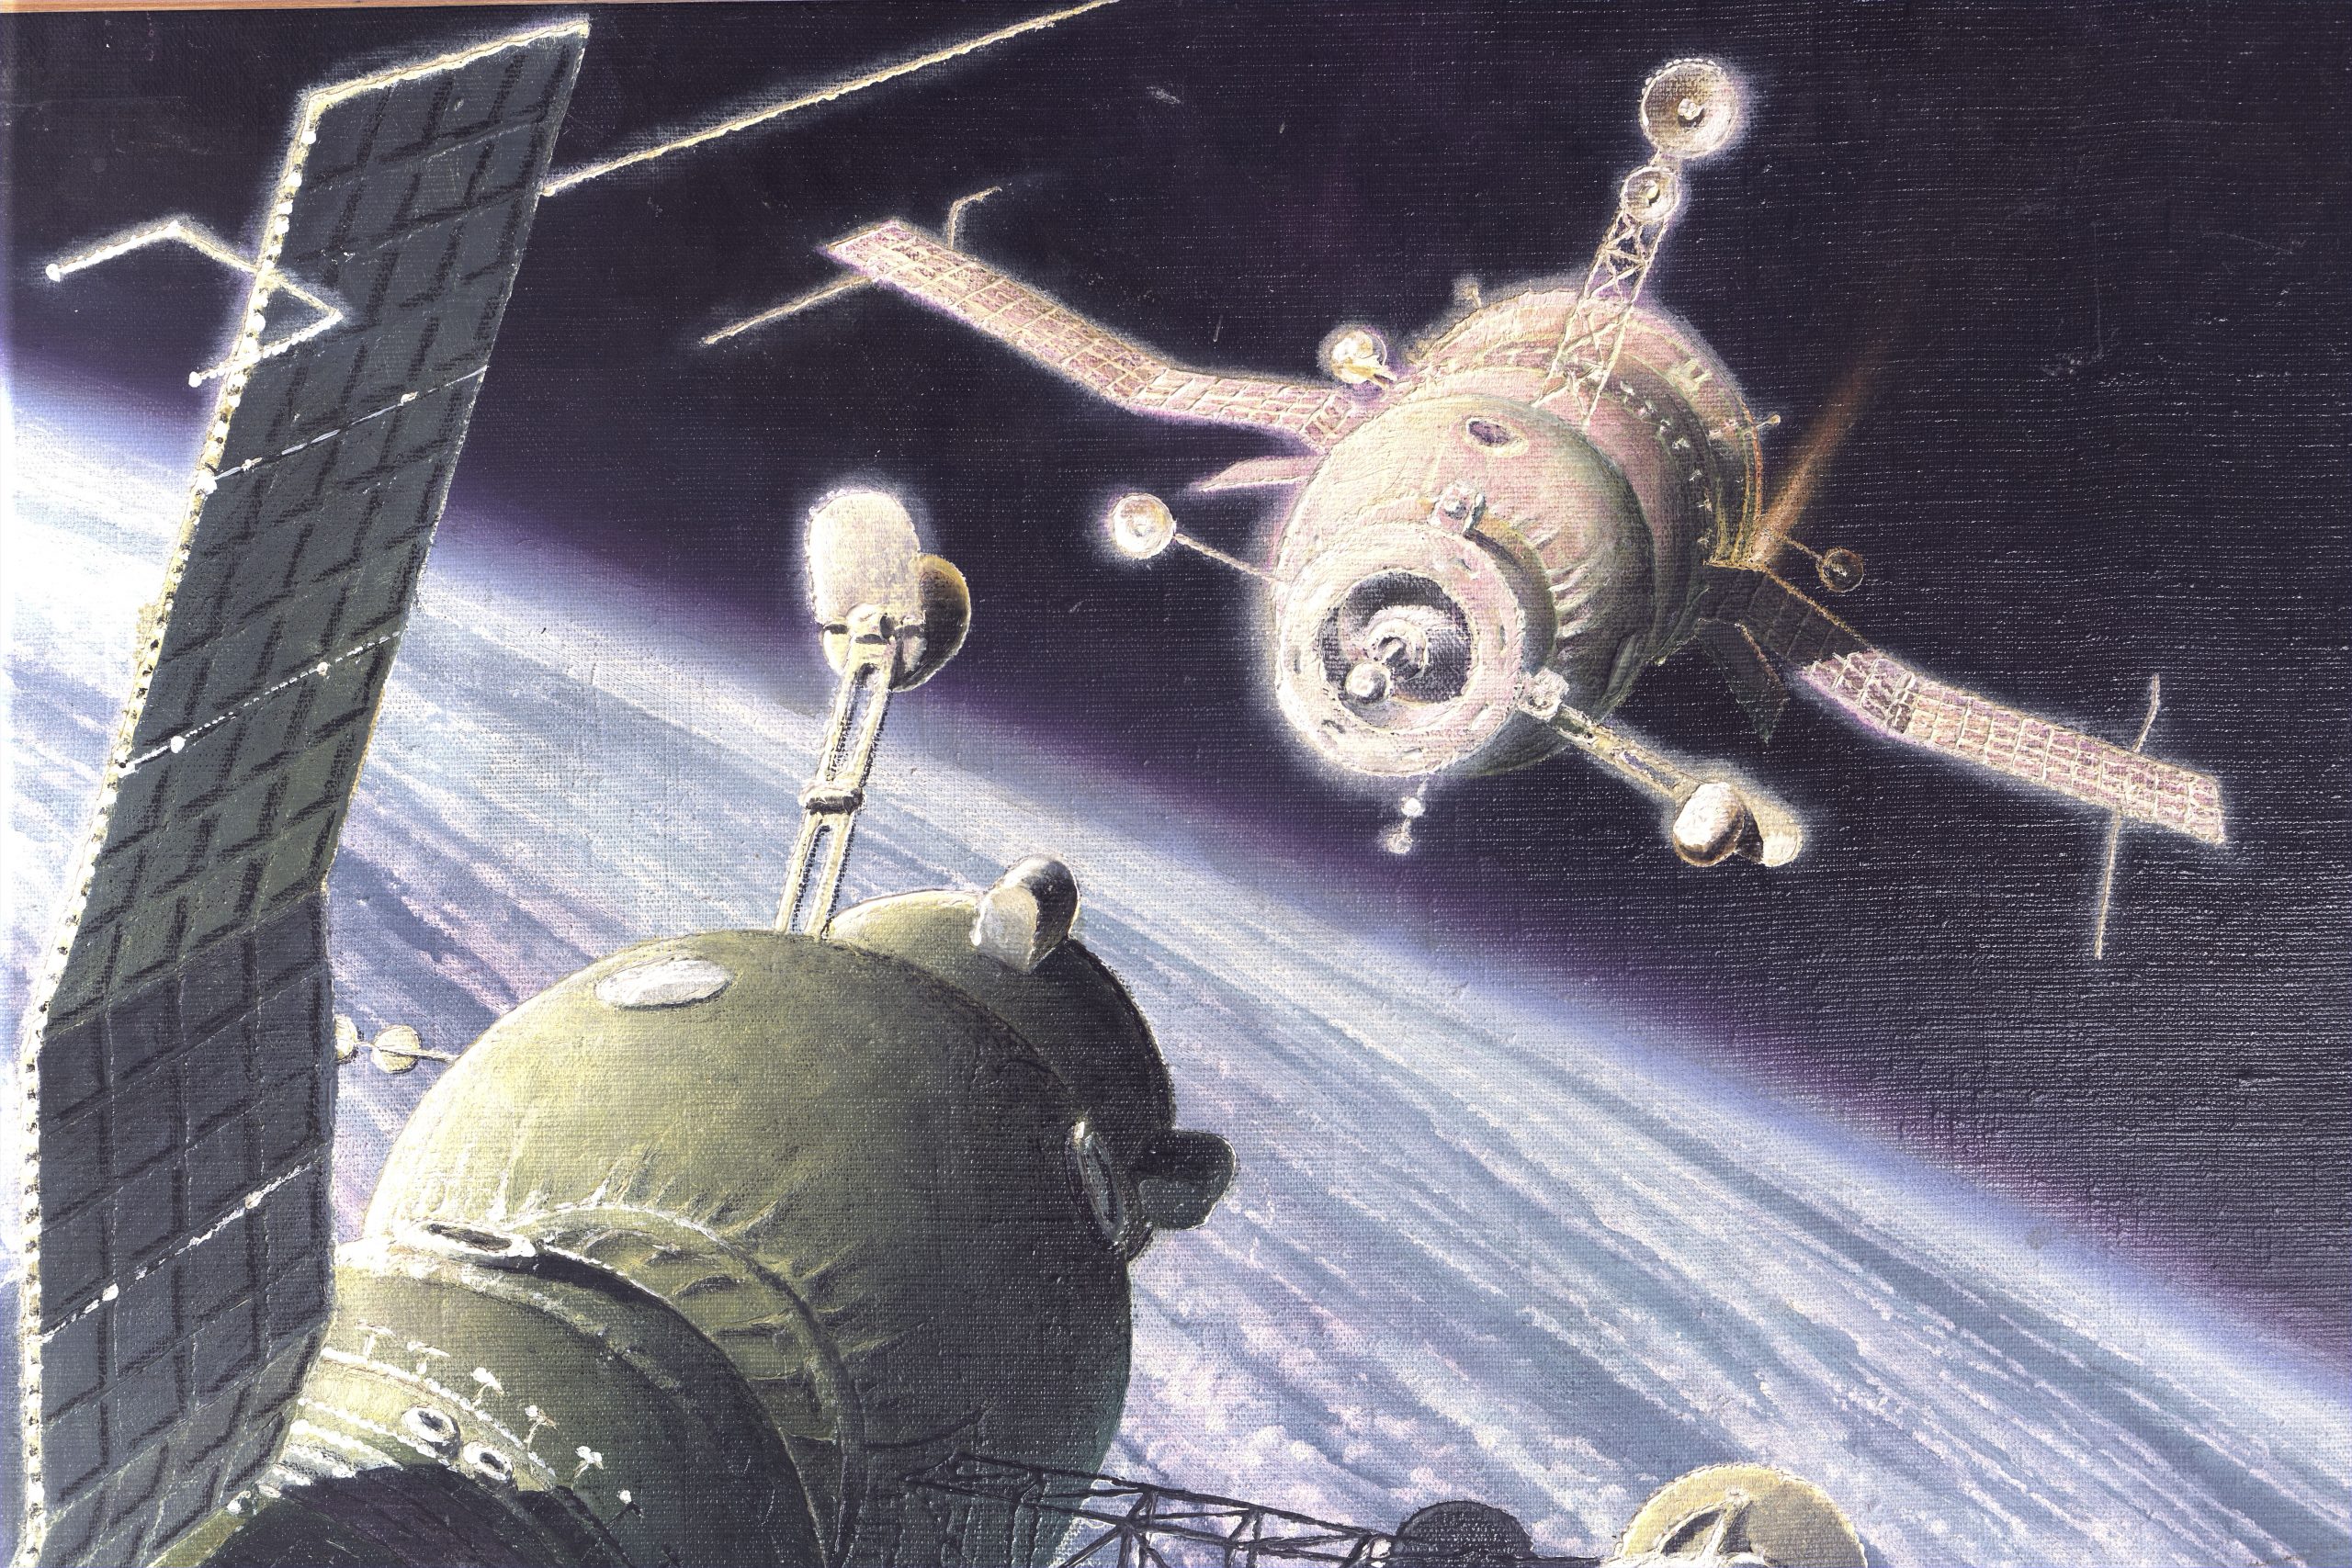 Первый космический корабль вышедший в космос. Первая стыковка двух пилотируемых кораблей — «Союз-4» и «Союз-5»,. Стыковка космических кораблей Союз 4 и Союз 5. Союз 2 пилотируемый корабль 1967. Стыковка кораблей Союз в 1969 году.